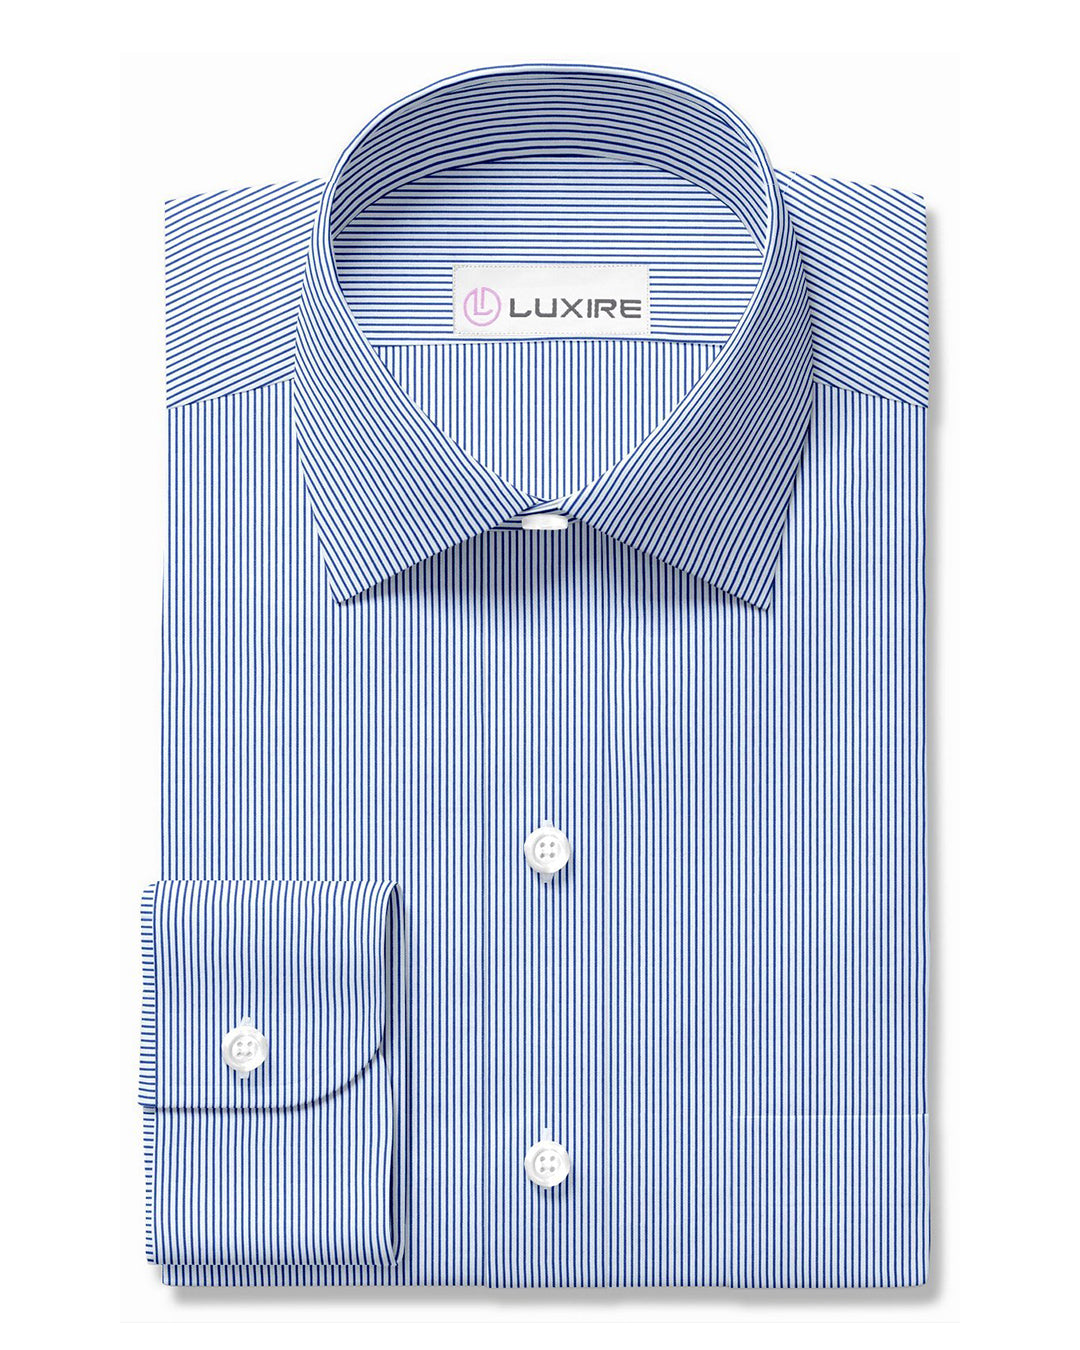 Luxire Privilege Collection Blue Stripes on White